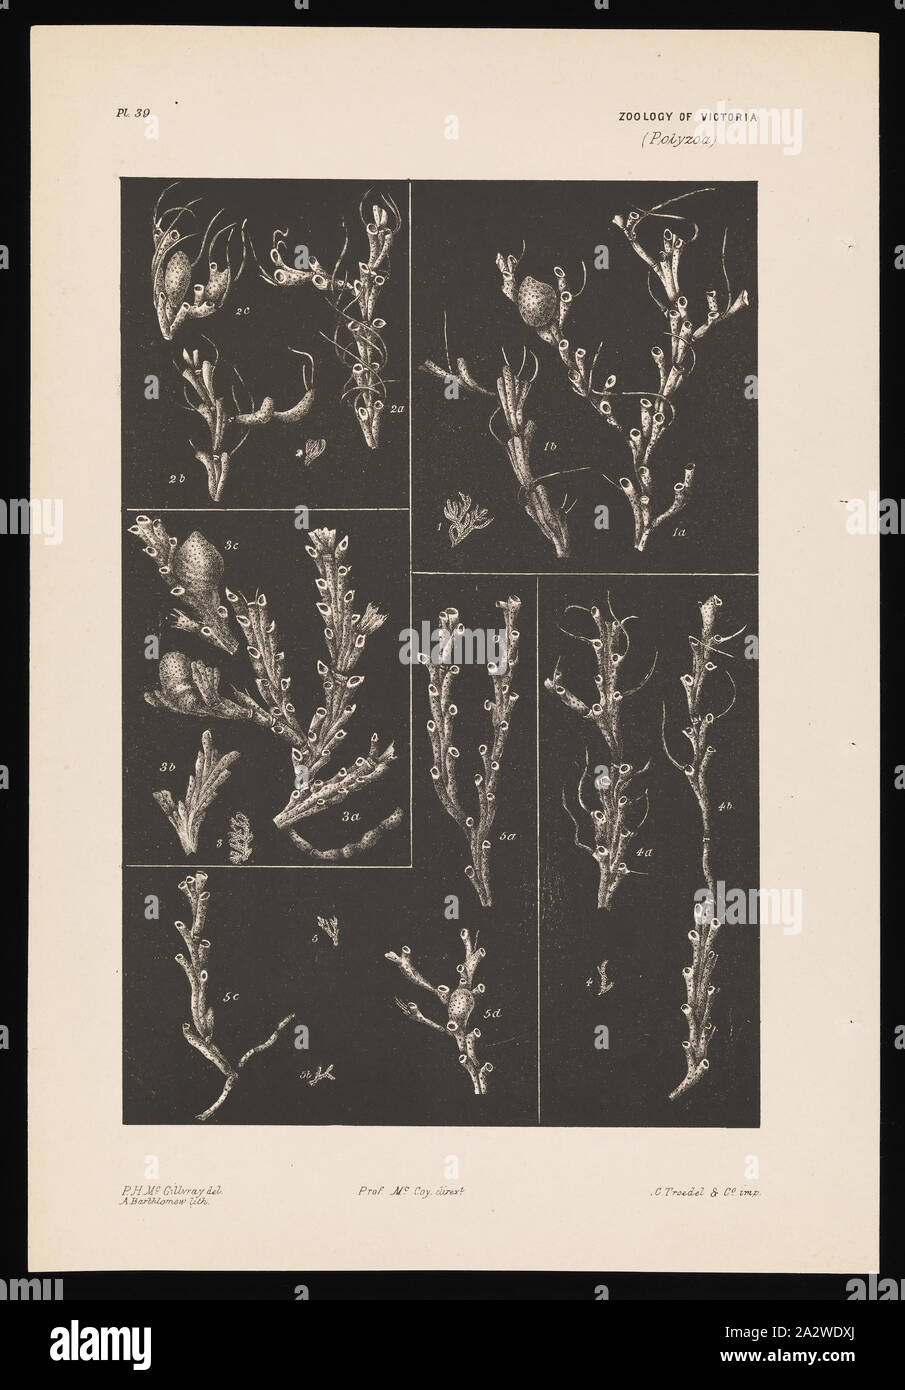 Lithographischen Drucken, veröffentlicht als Platte 39 im Prodromus der Zoologie von Victoria von Frederick McCoy. Von einem Überfluss Band entfernt Stockfoto